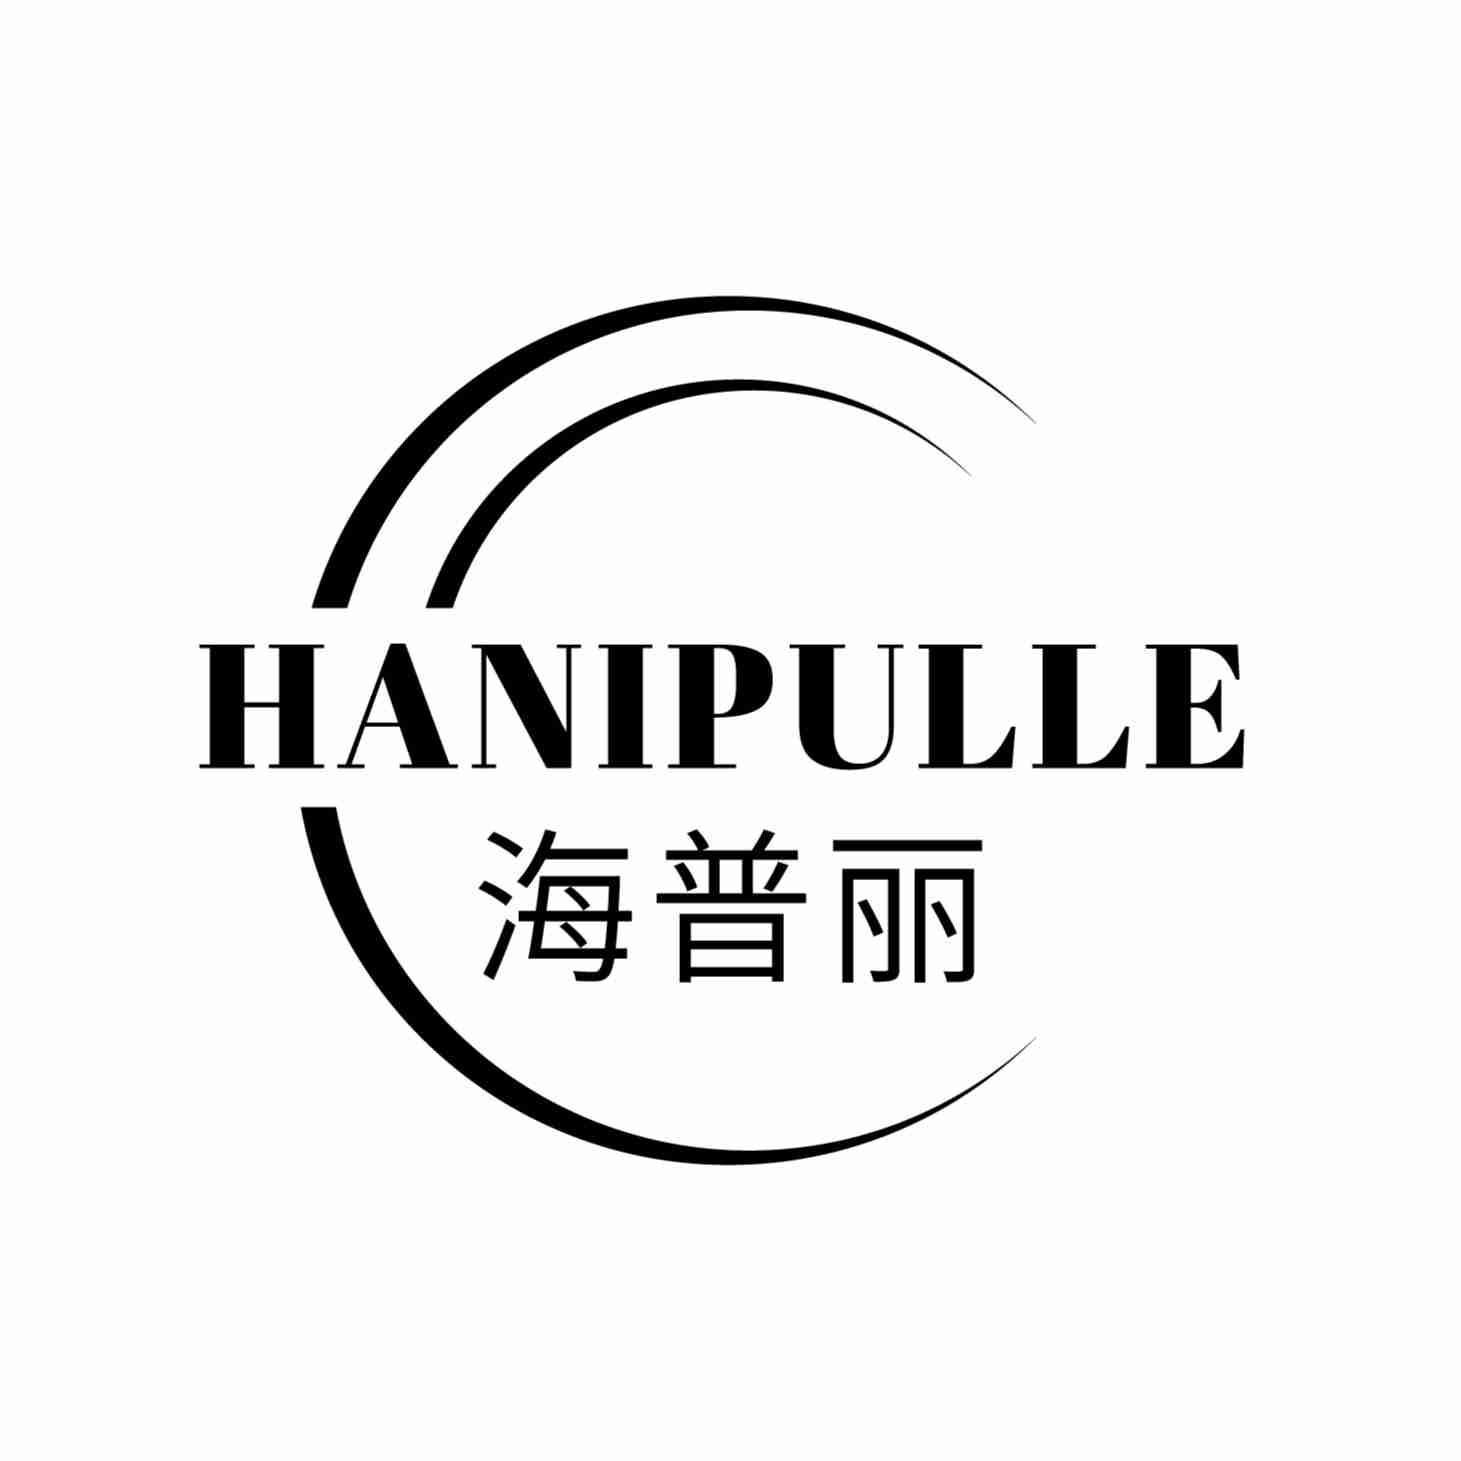 海普丽HANIPULLE